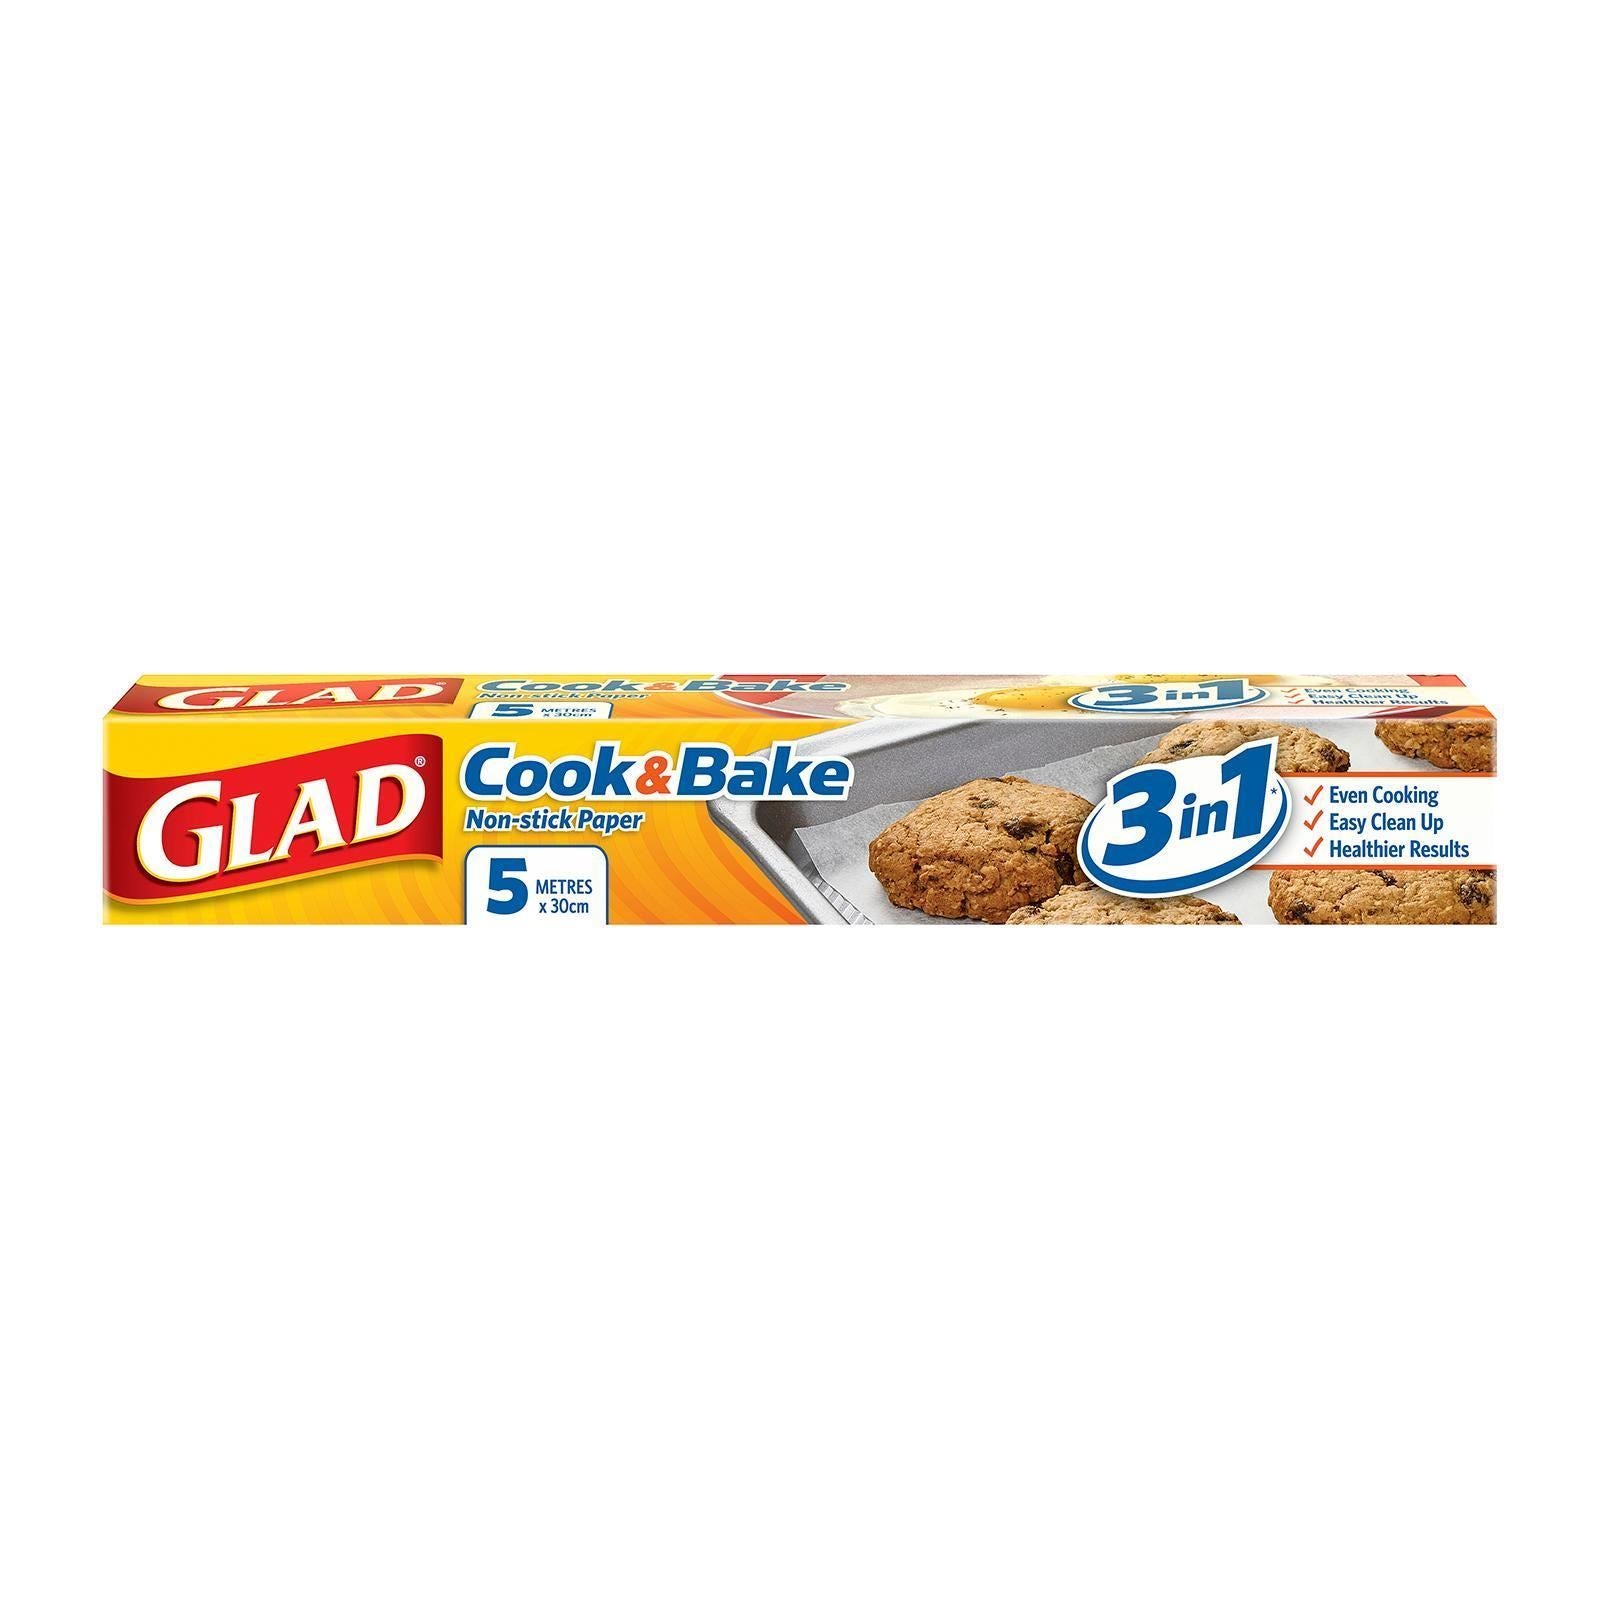 GLAD Cook & Bake Non Stick Paper